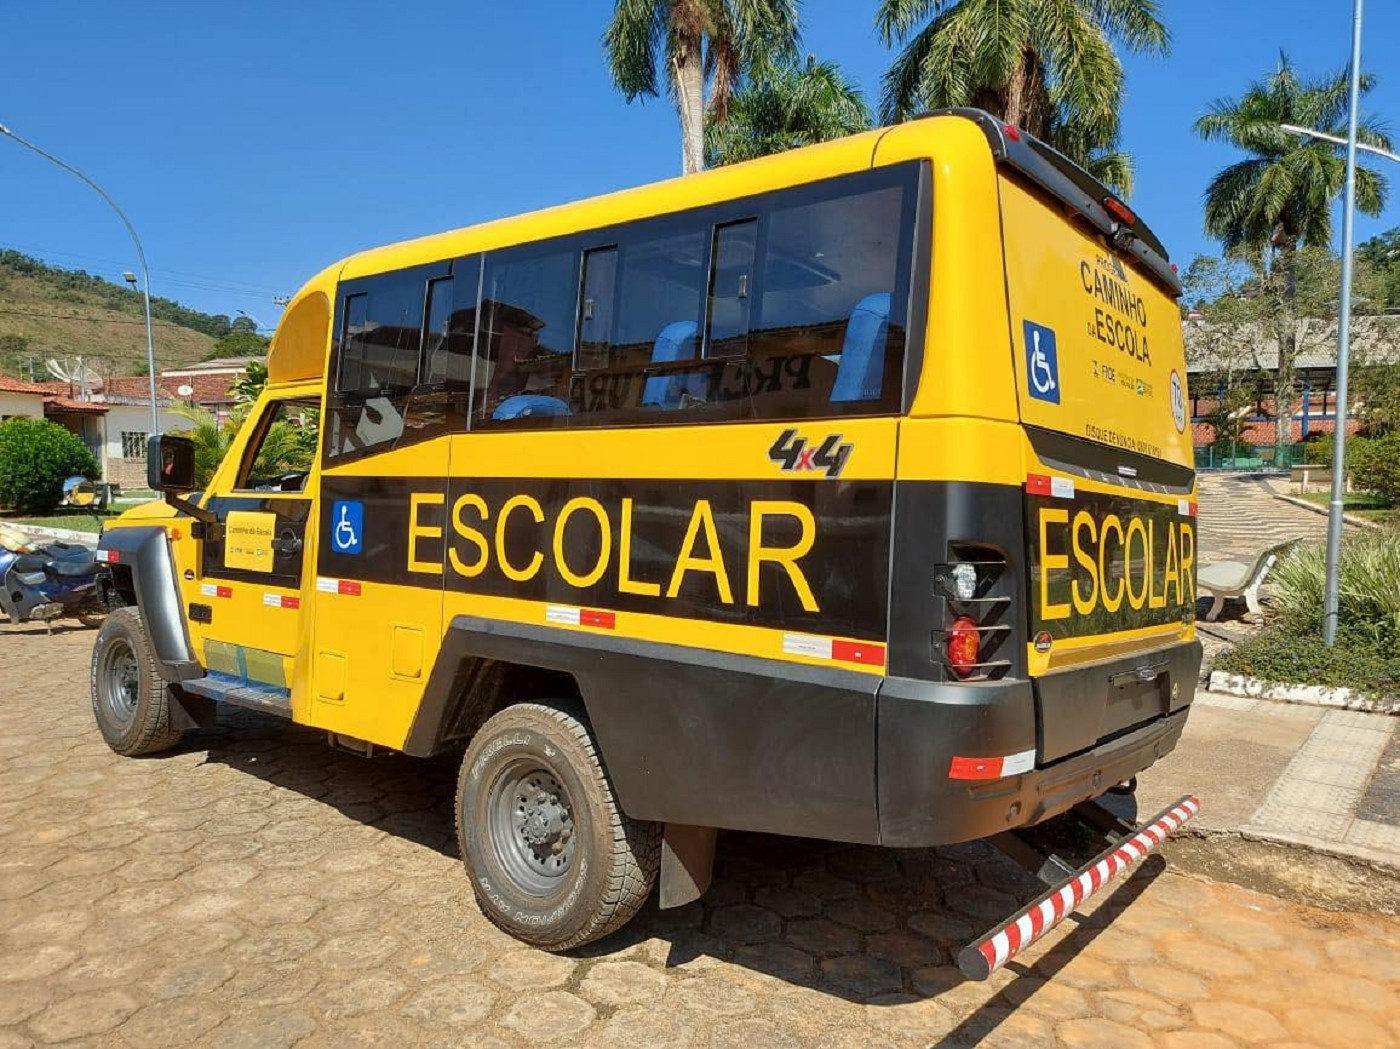 Entrega de ônibus escolar - Beneficiário: município de Miraí (MG)